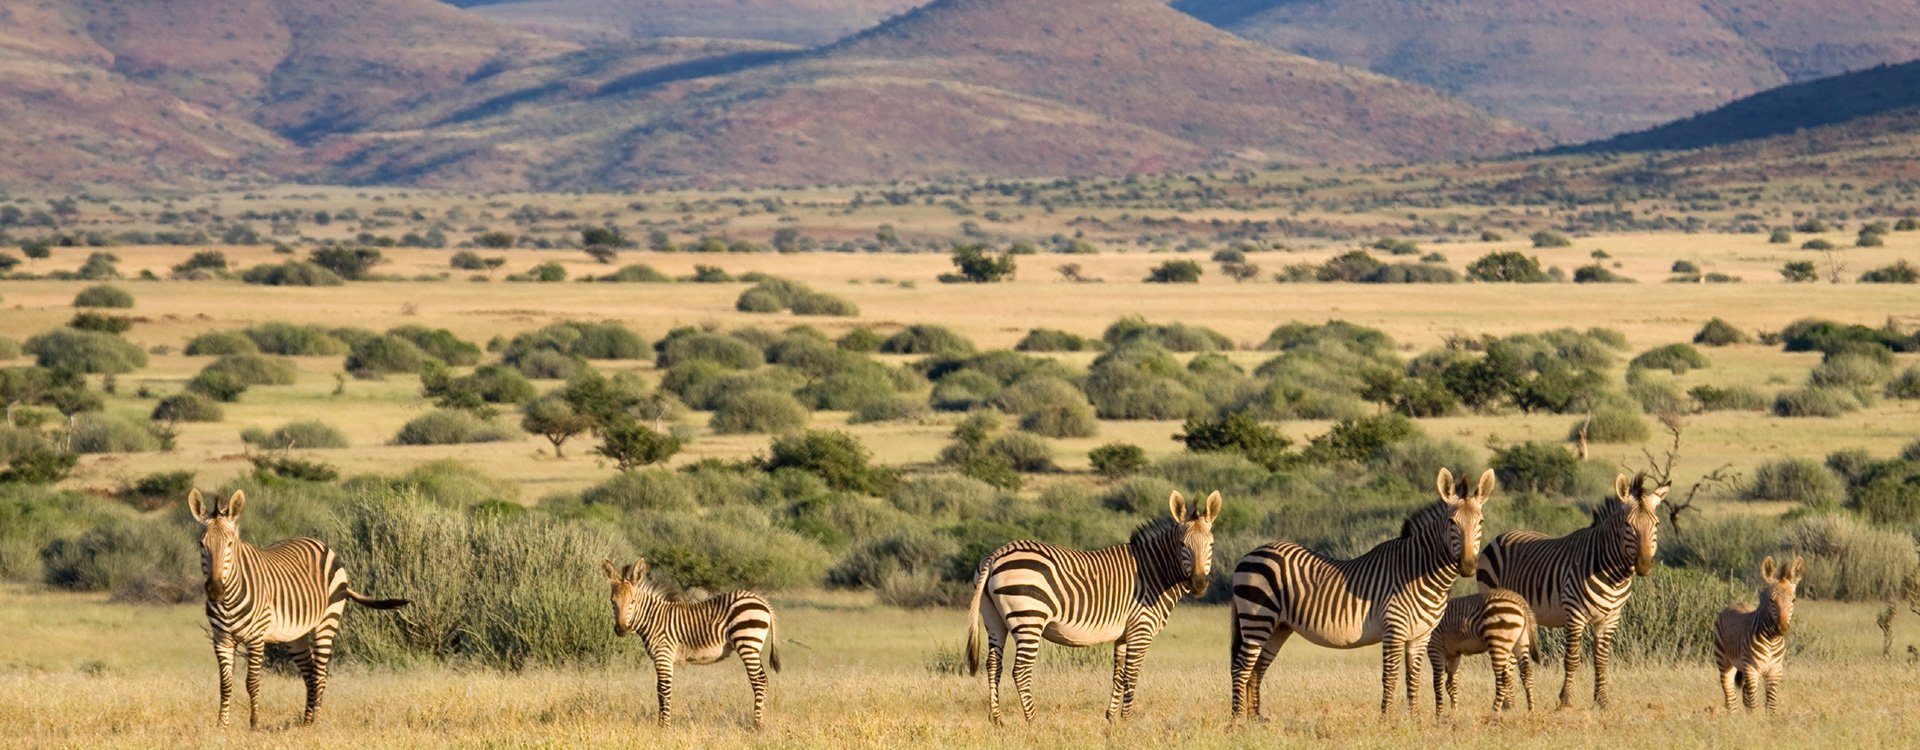 Namibia_Damaraland_Wildlife